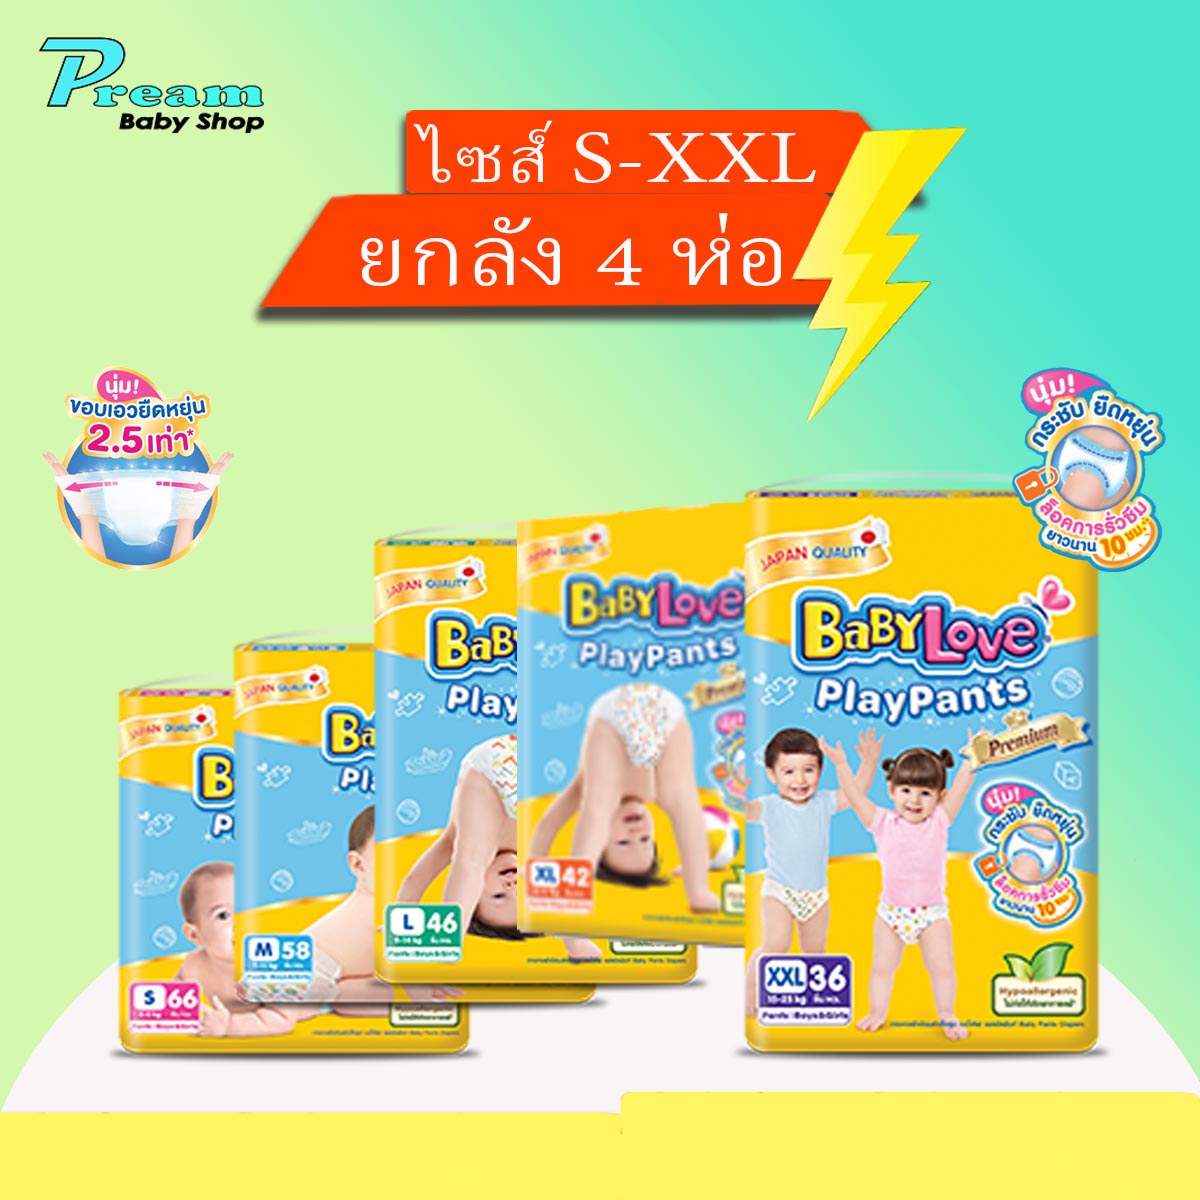 โปรโมชั่น ขายยกลัง BabyLove กางเกงผ้าอ้อมเด็ก รุ่น Playpant Nano Power Plus S-XXL#Preambabyshop